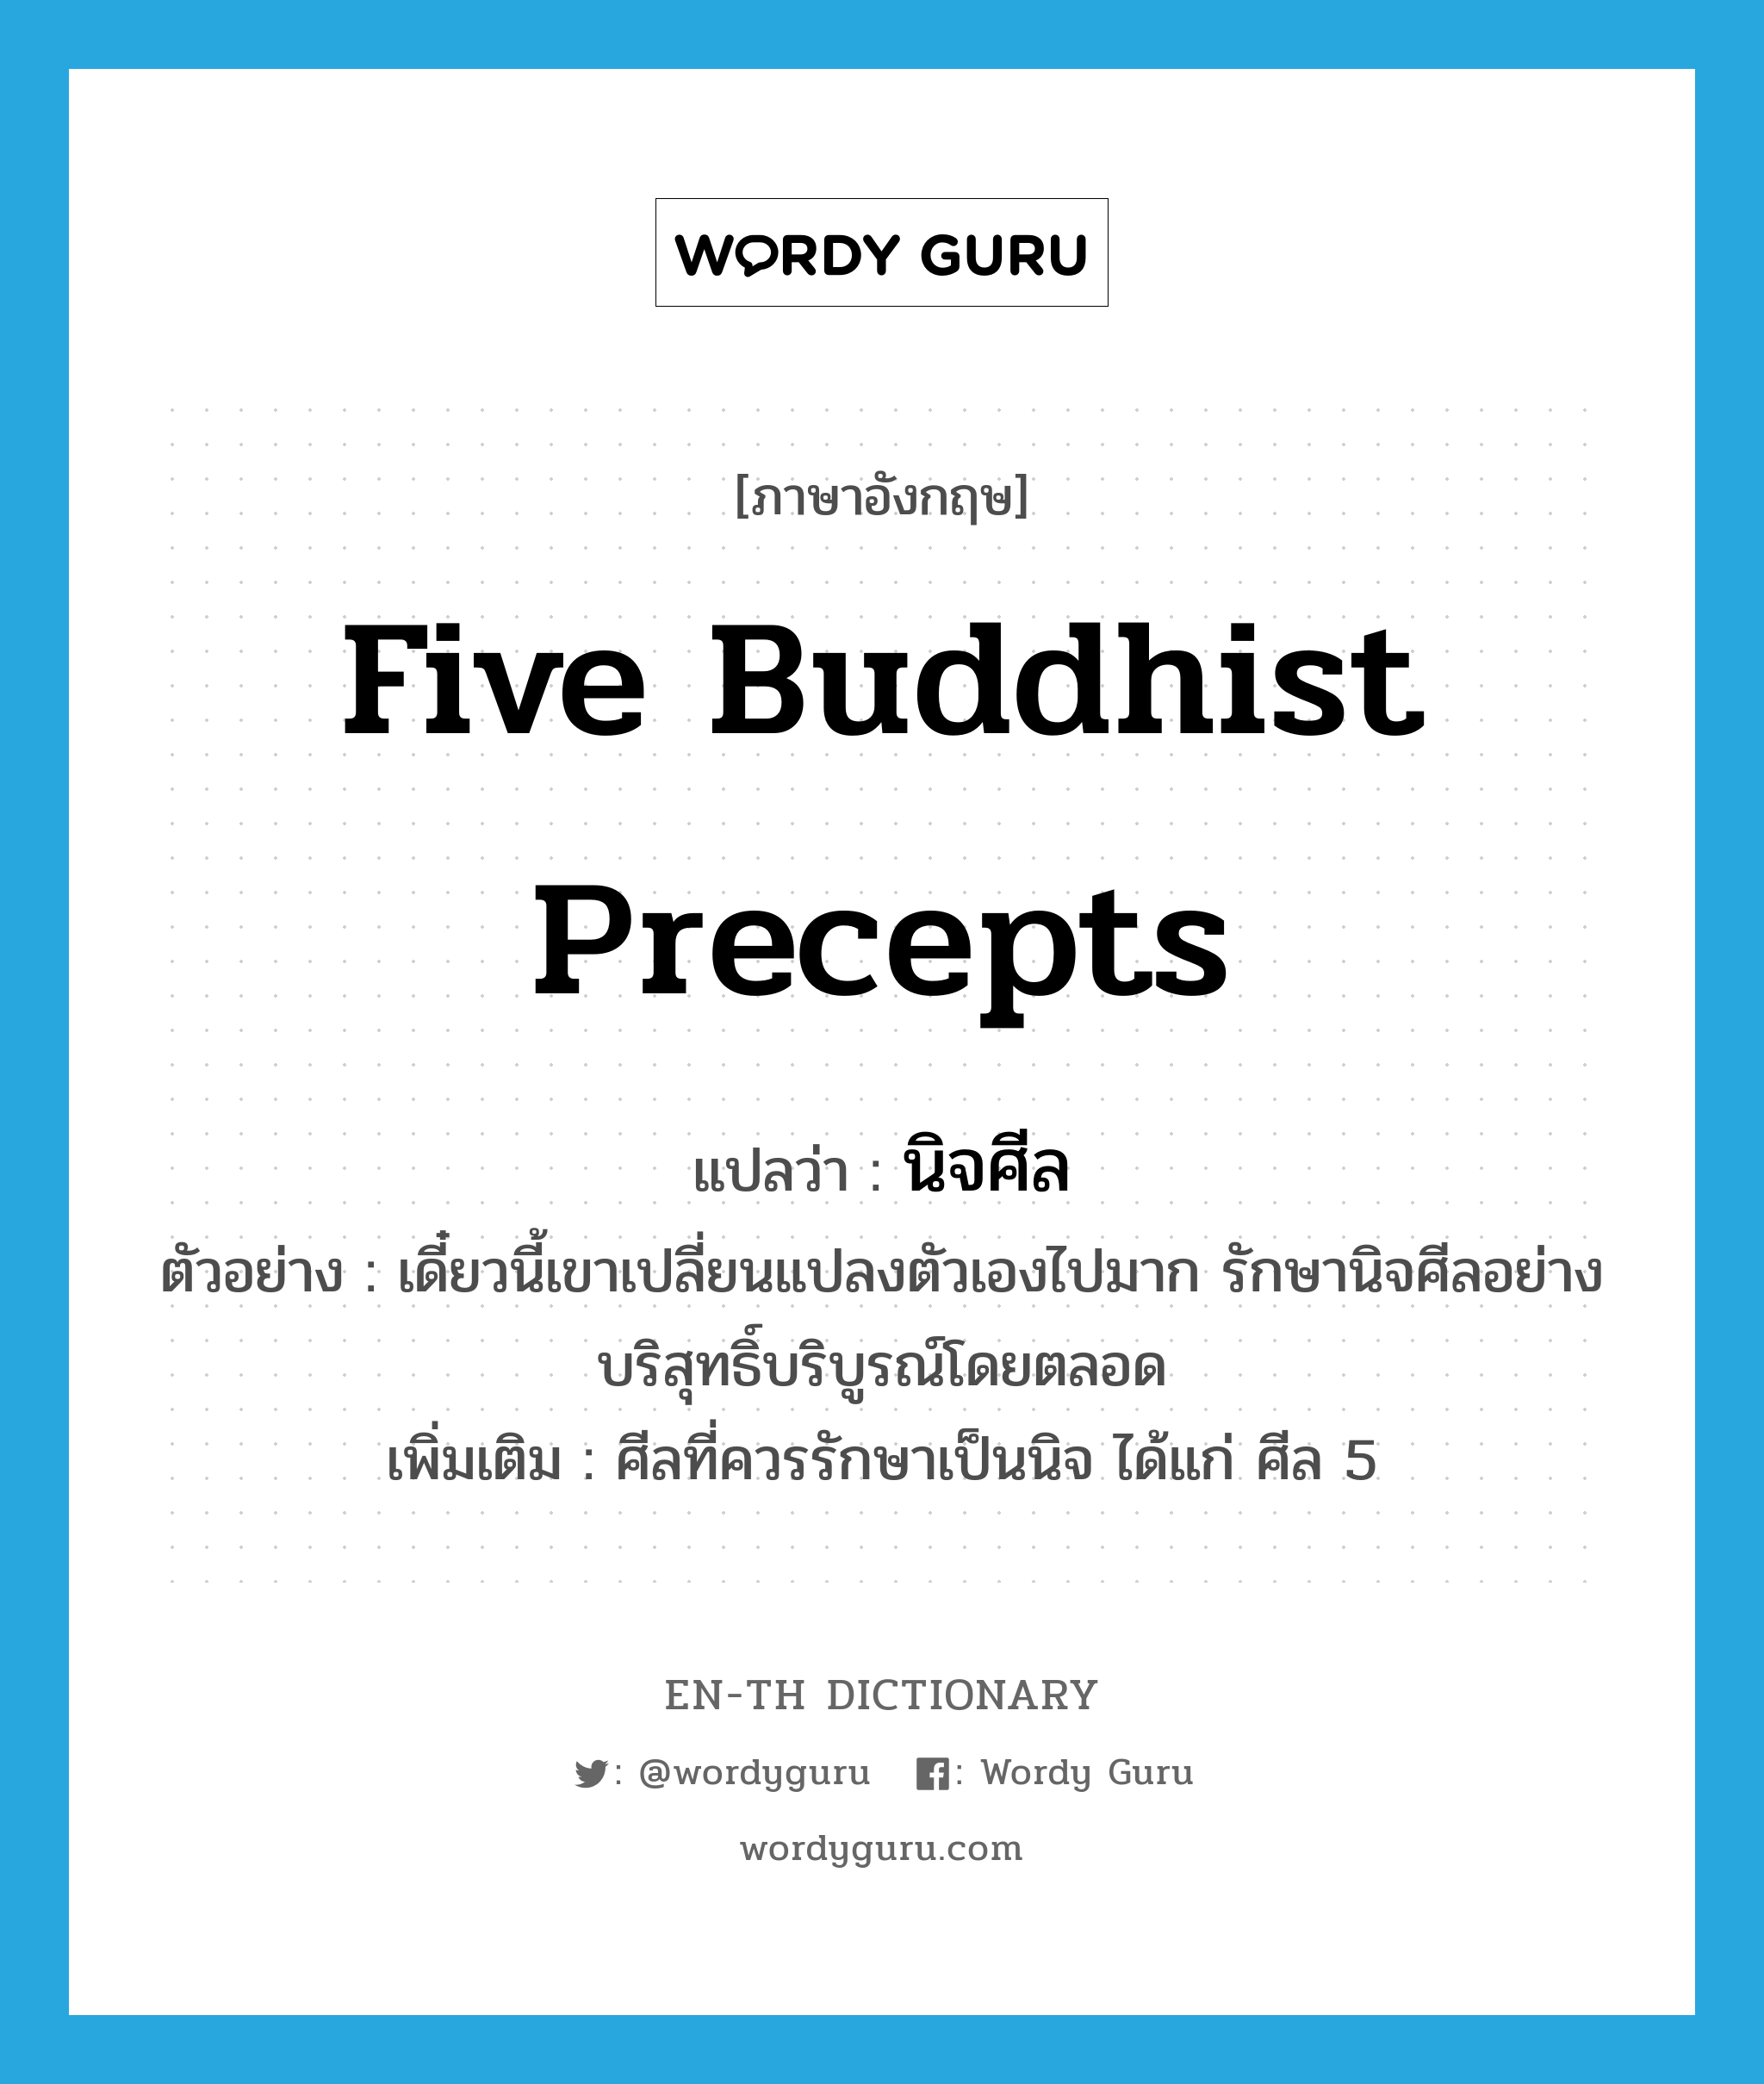 นิจศีล ภาษาอังกฤษ?, คำศัพท์ภาษาอังกฤษ นิจศีล แปลว่า Five Buddhist Precepts ประเภท N ตัวอย่าง เดี๋ยวนี้เขาเปลี่ยนแปลงตัวเองไปมาก รักษานิจศีลอย่างบริสุทธิ์บริบูรณ์โดยตลอด เพิ่มเติม ศีลที่ควรรักษาเป็นนิจ ได้แก่ ศีล 5 หมวด N